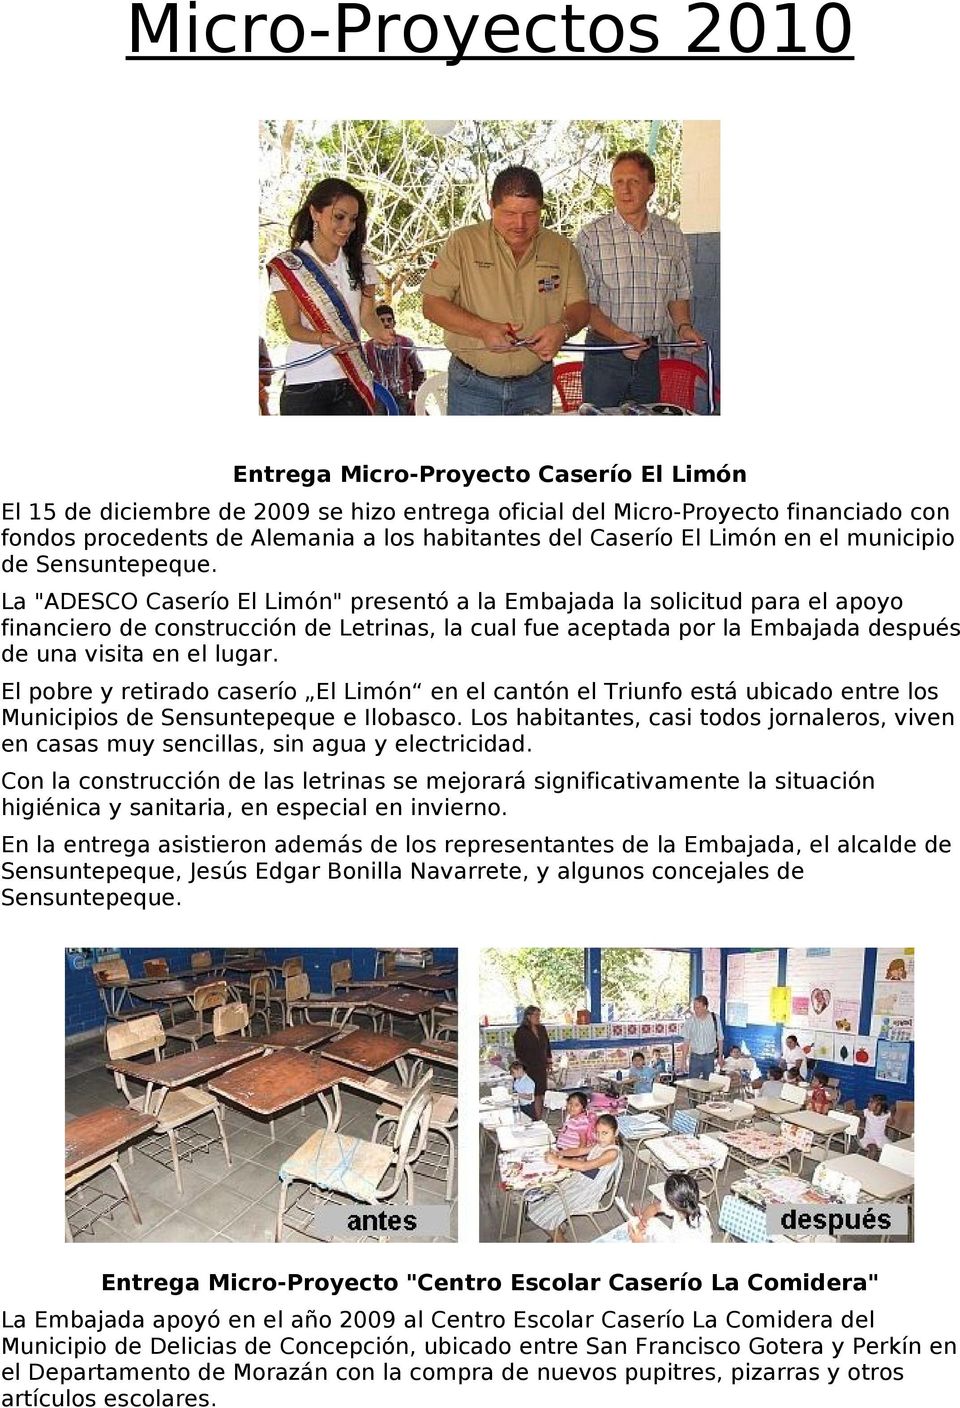 La "ADESCO Caserío El Limón" presentó a la Embajada la solicitud para el apoyo financiero de construcción de Letrinas, la cual fue aceptada por la Embajada después de una visita en el lugar.